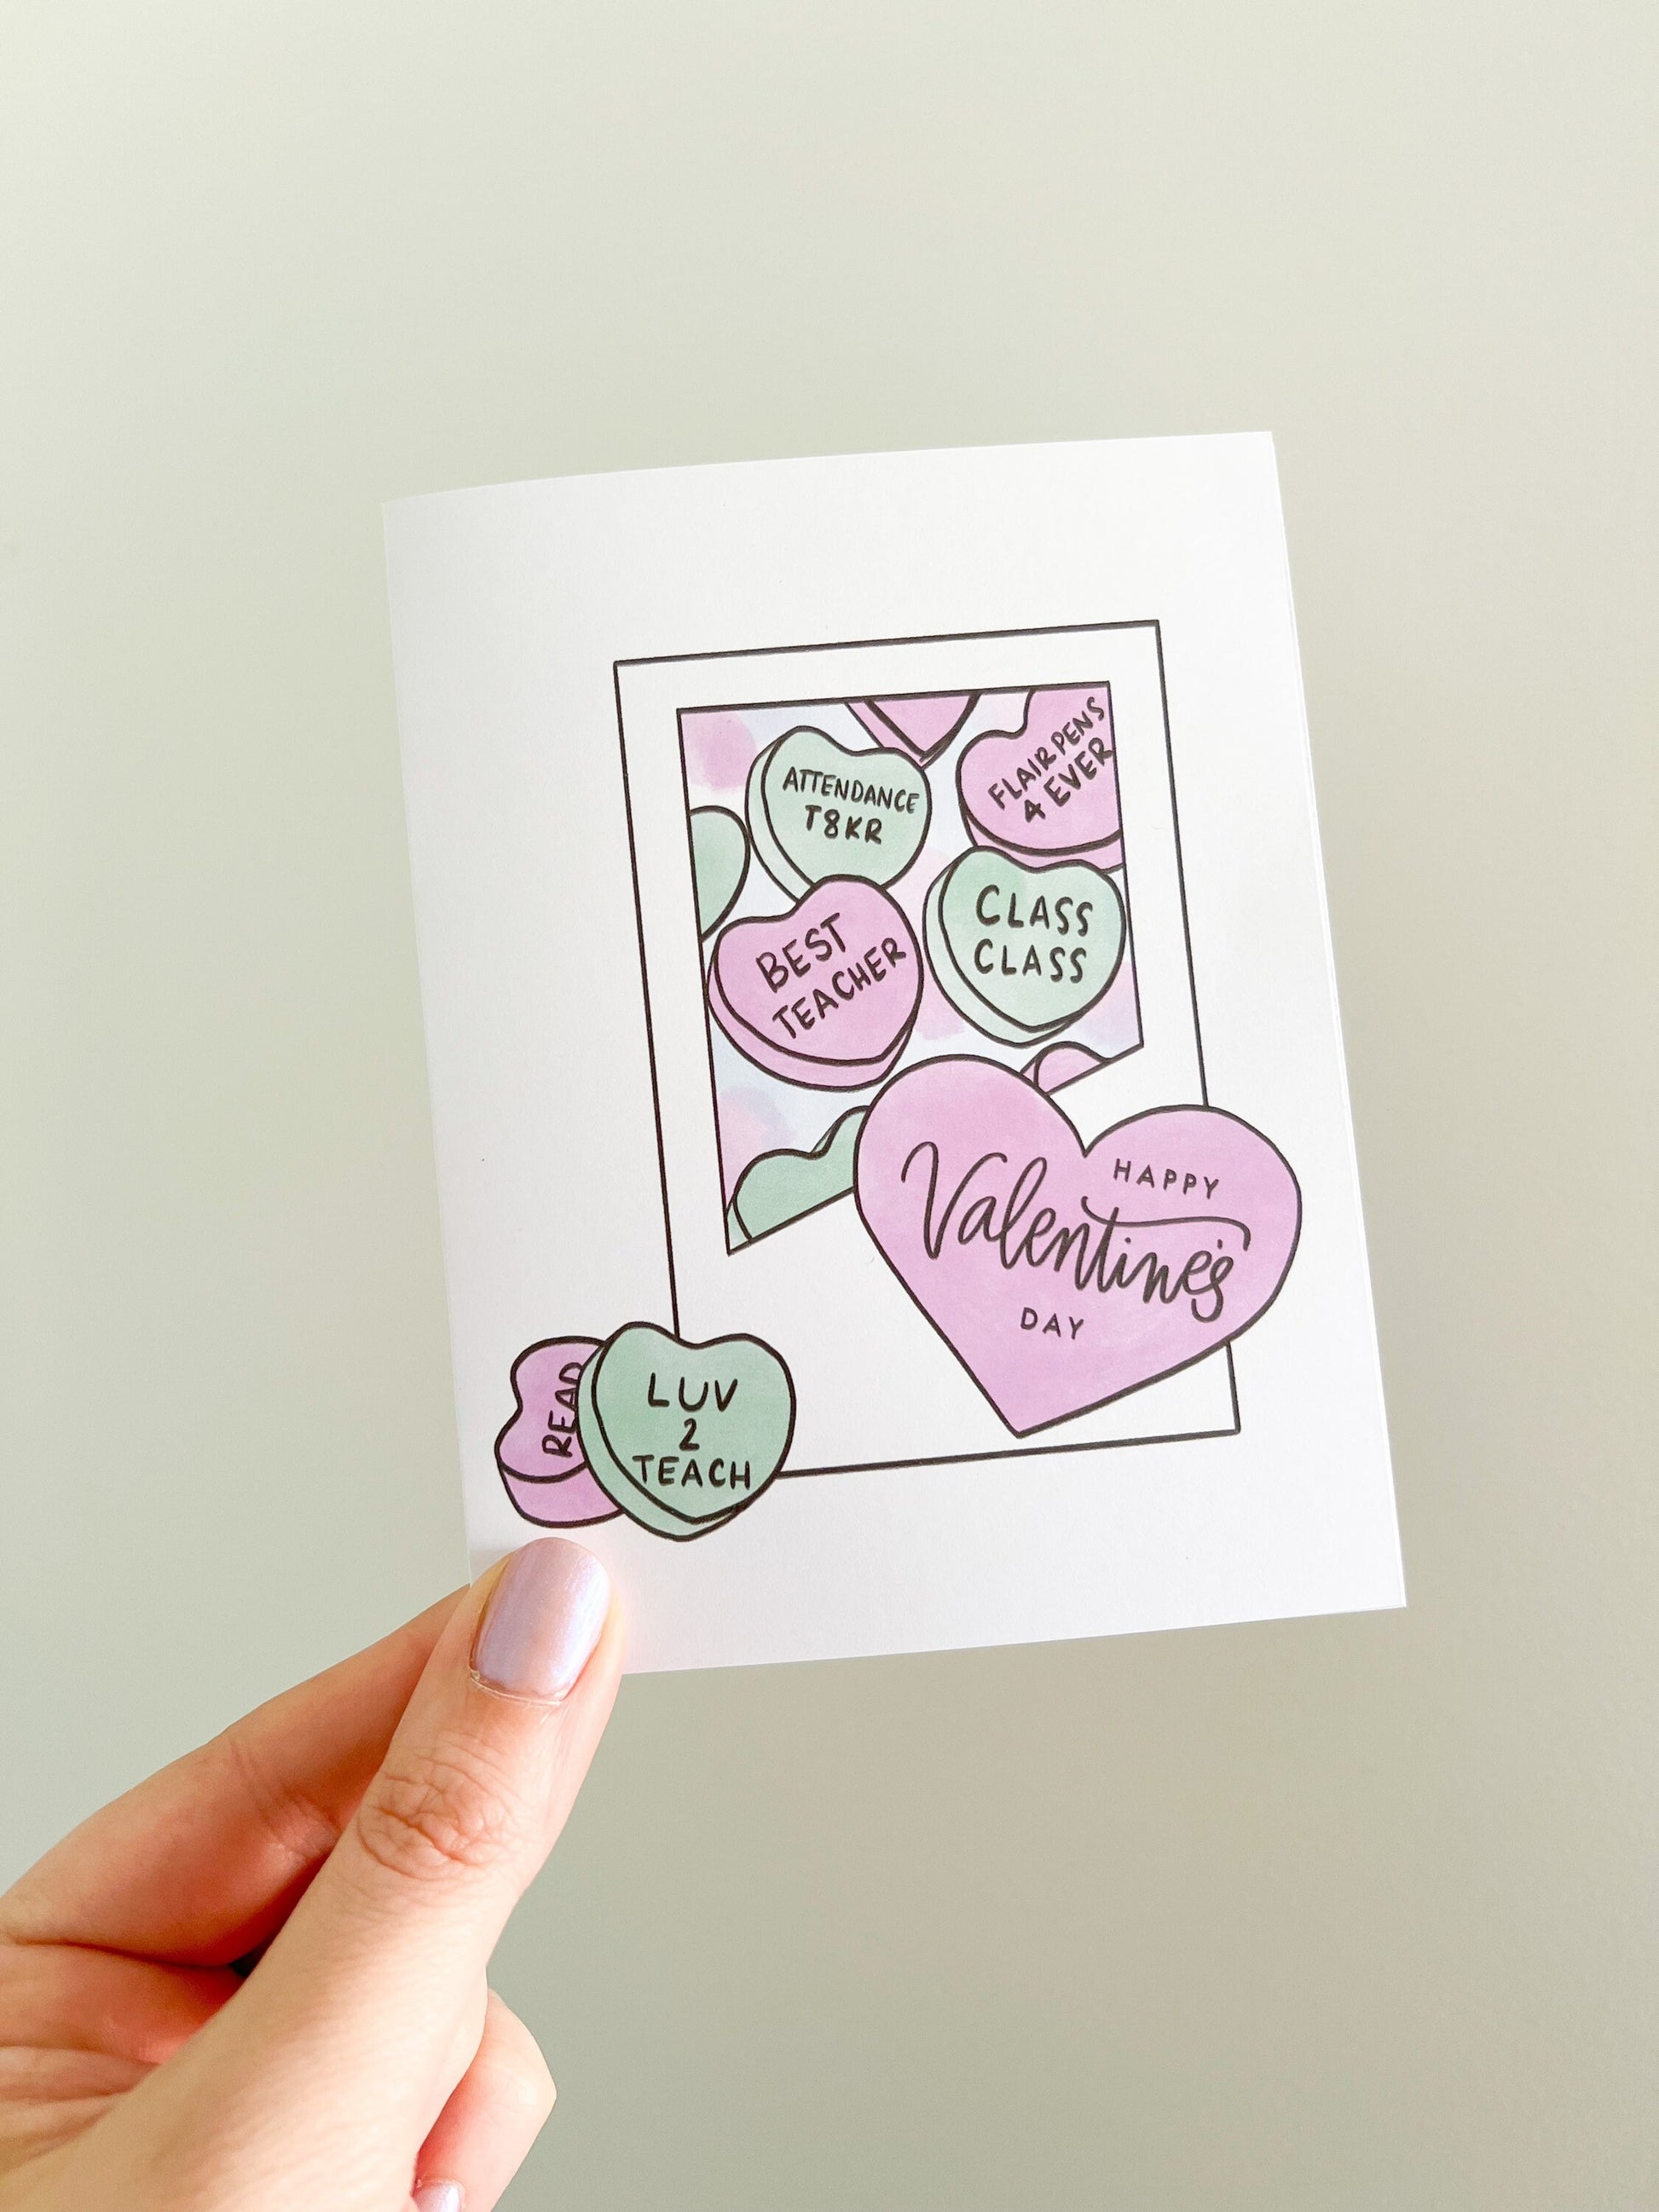 Teacher conversation hearts - Valentine’s Day card -teacher gift